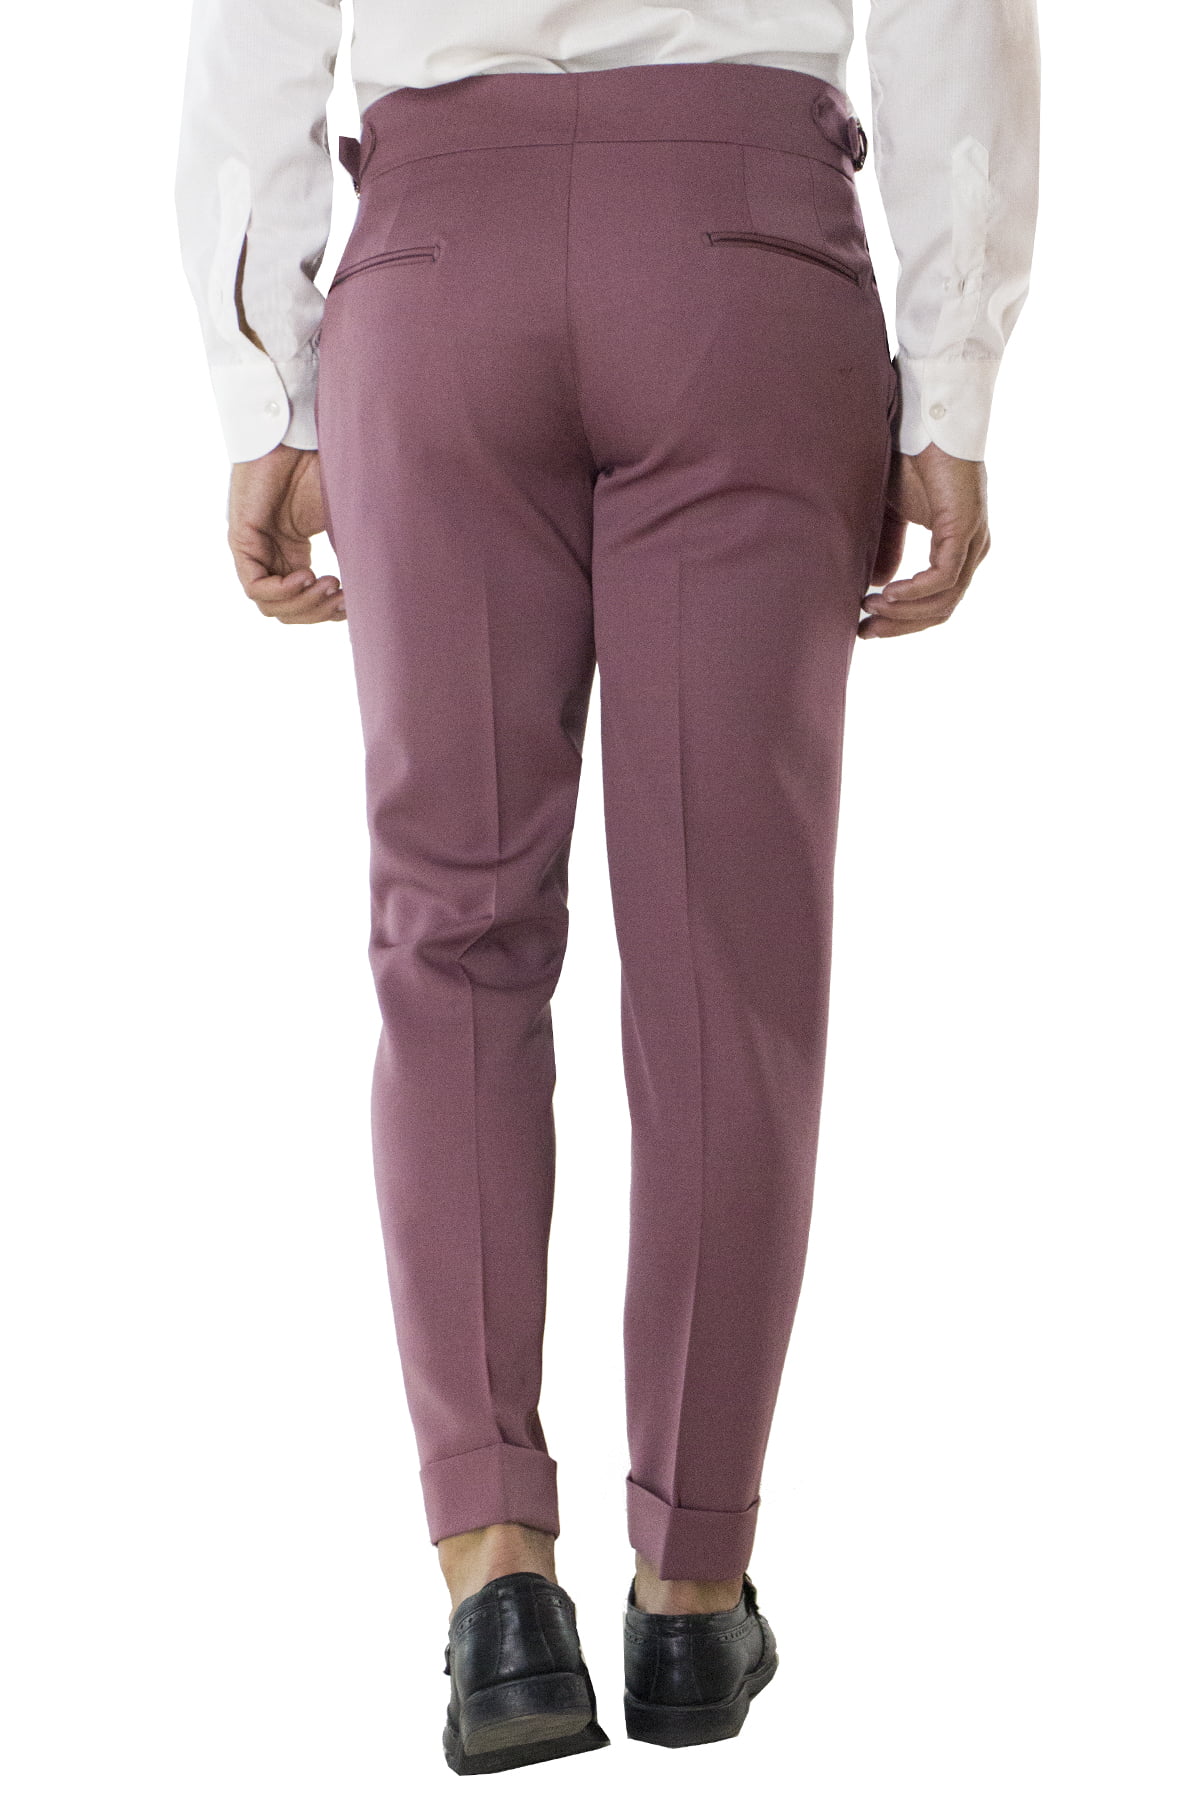 Pantalone uomo cipolla in lana tinta unita vita alta con pinces fibbie laterali e risvolto 4cm